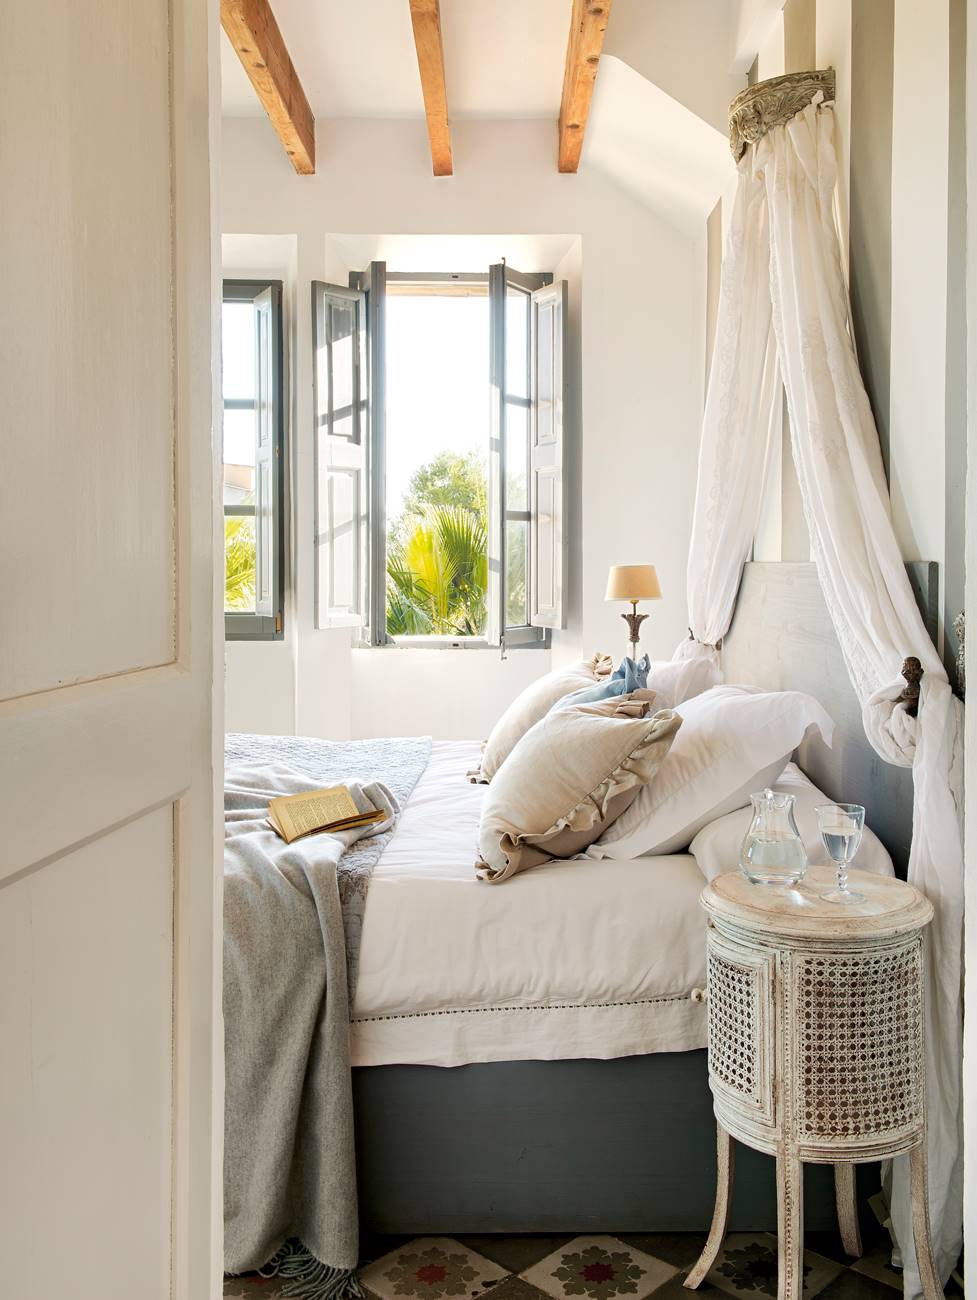 Dormitorio con mesilla de noche de mimbre, vigas de madera, ventana con porticones de color azul y mosquitera